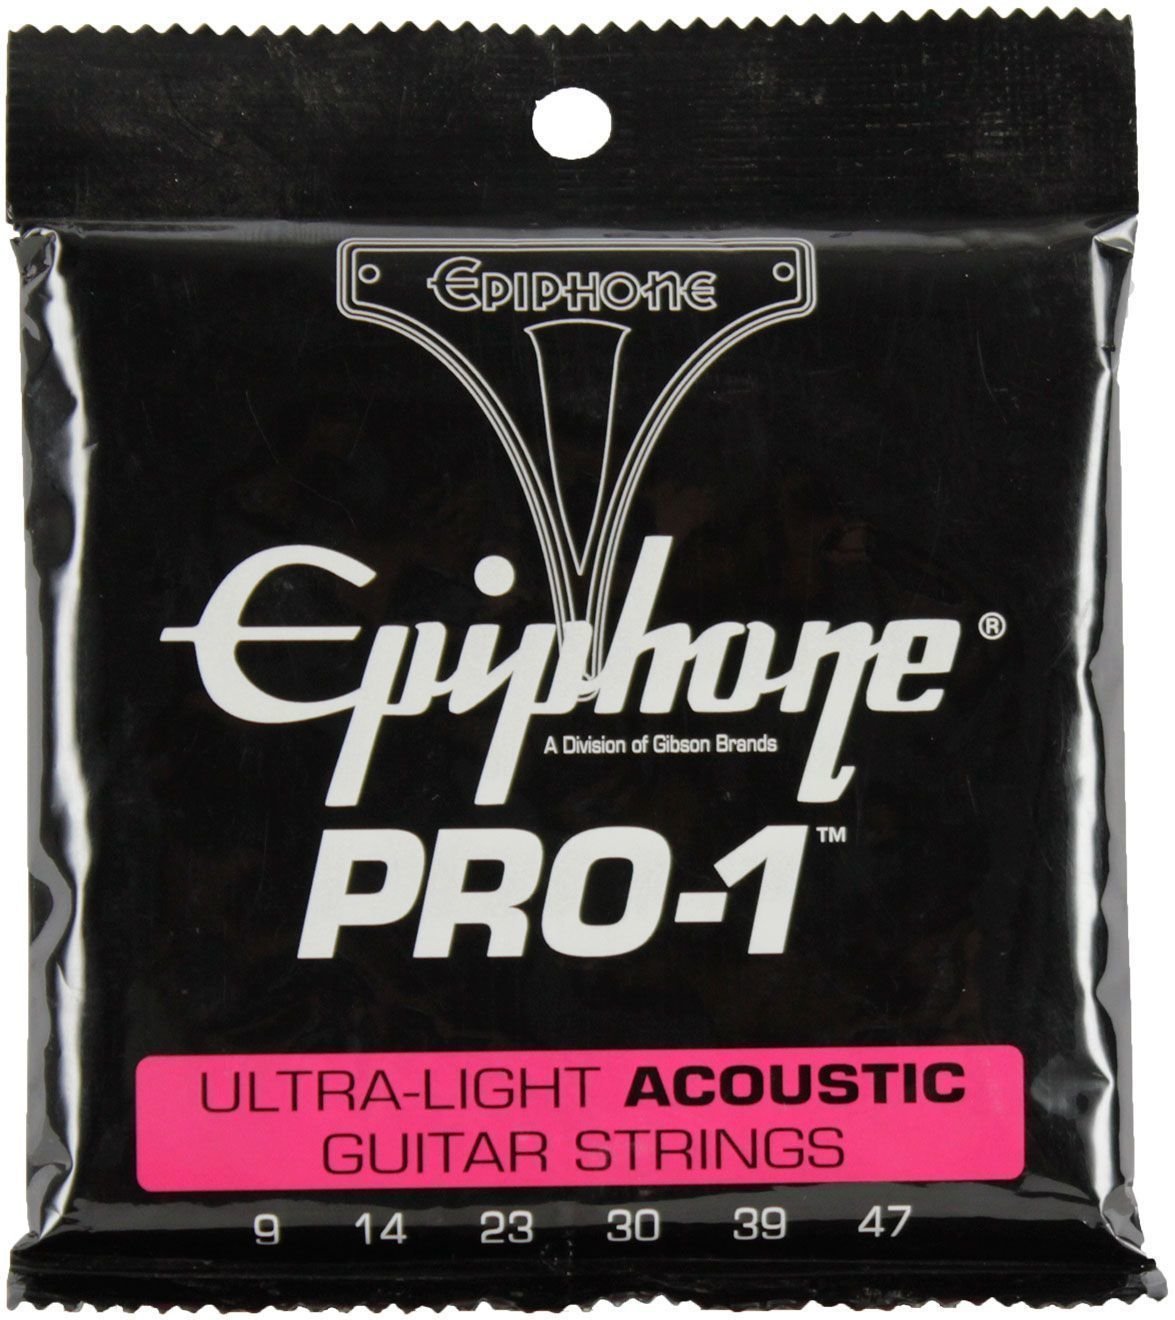 Cordes de guitares acoustiques Epiphone Pro-1 Ultra-Light Acoustic Strings